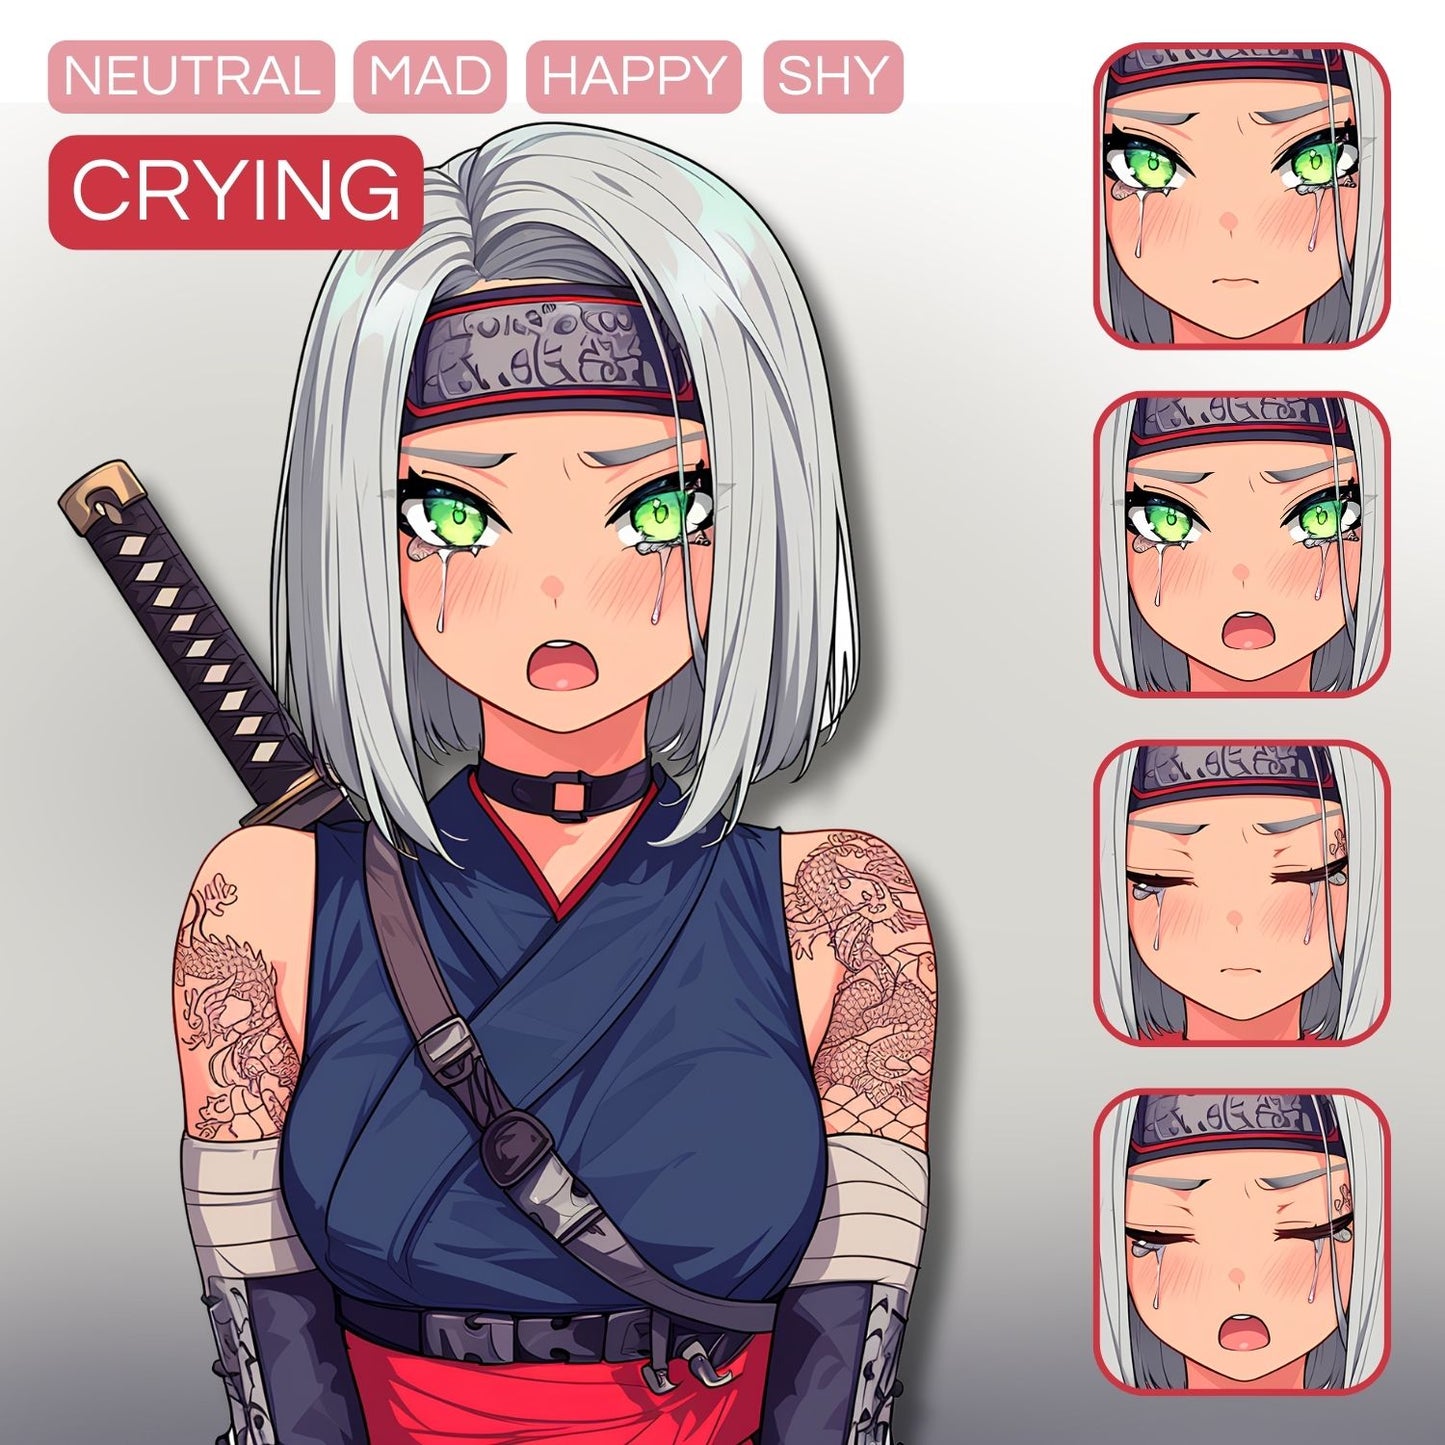 Ninja Girl PNGTuber | Veadotube Avatar Download